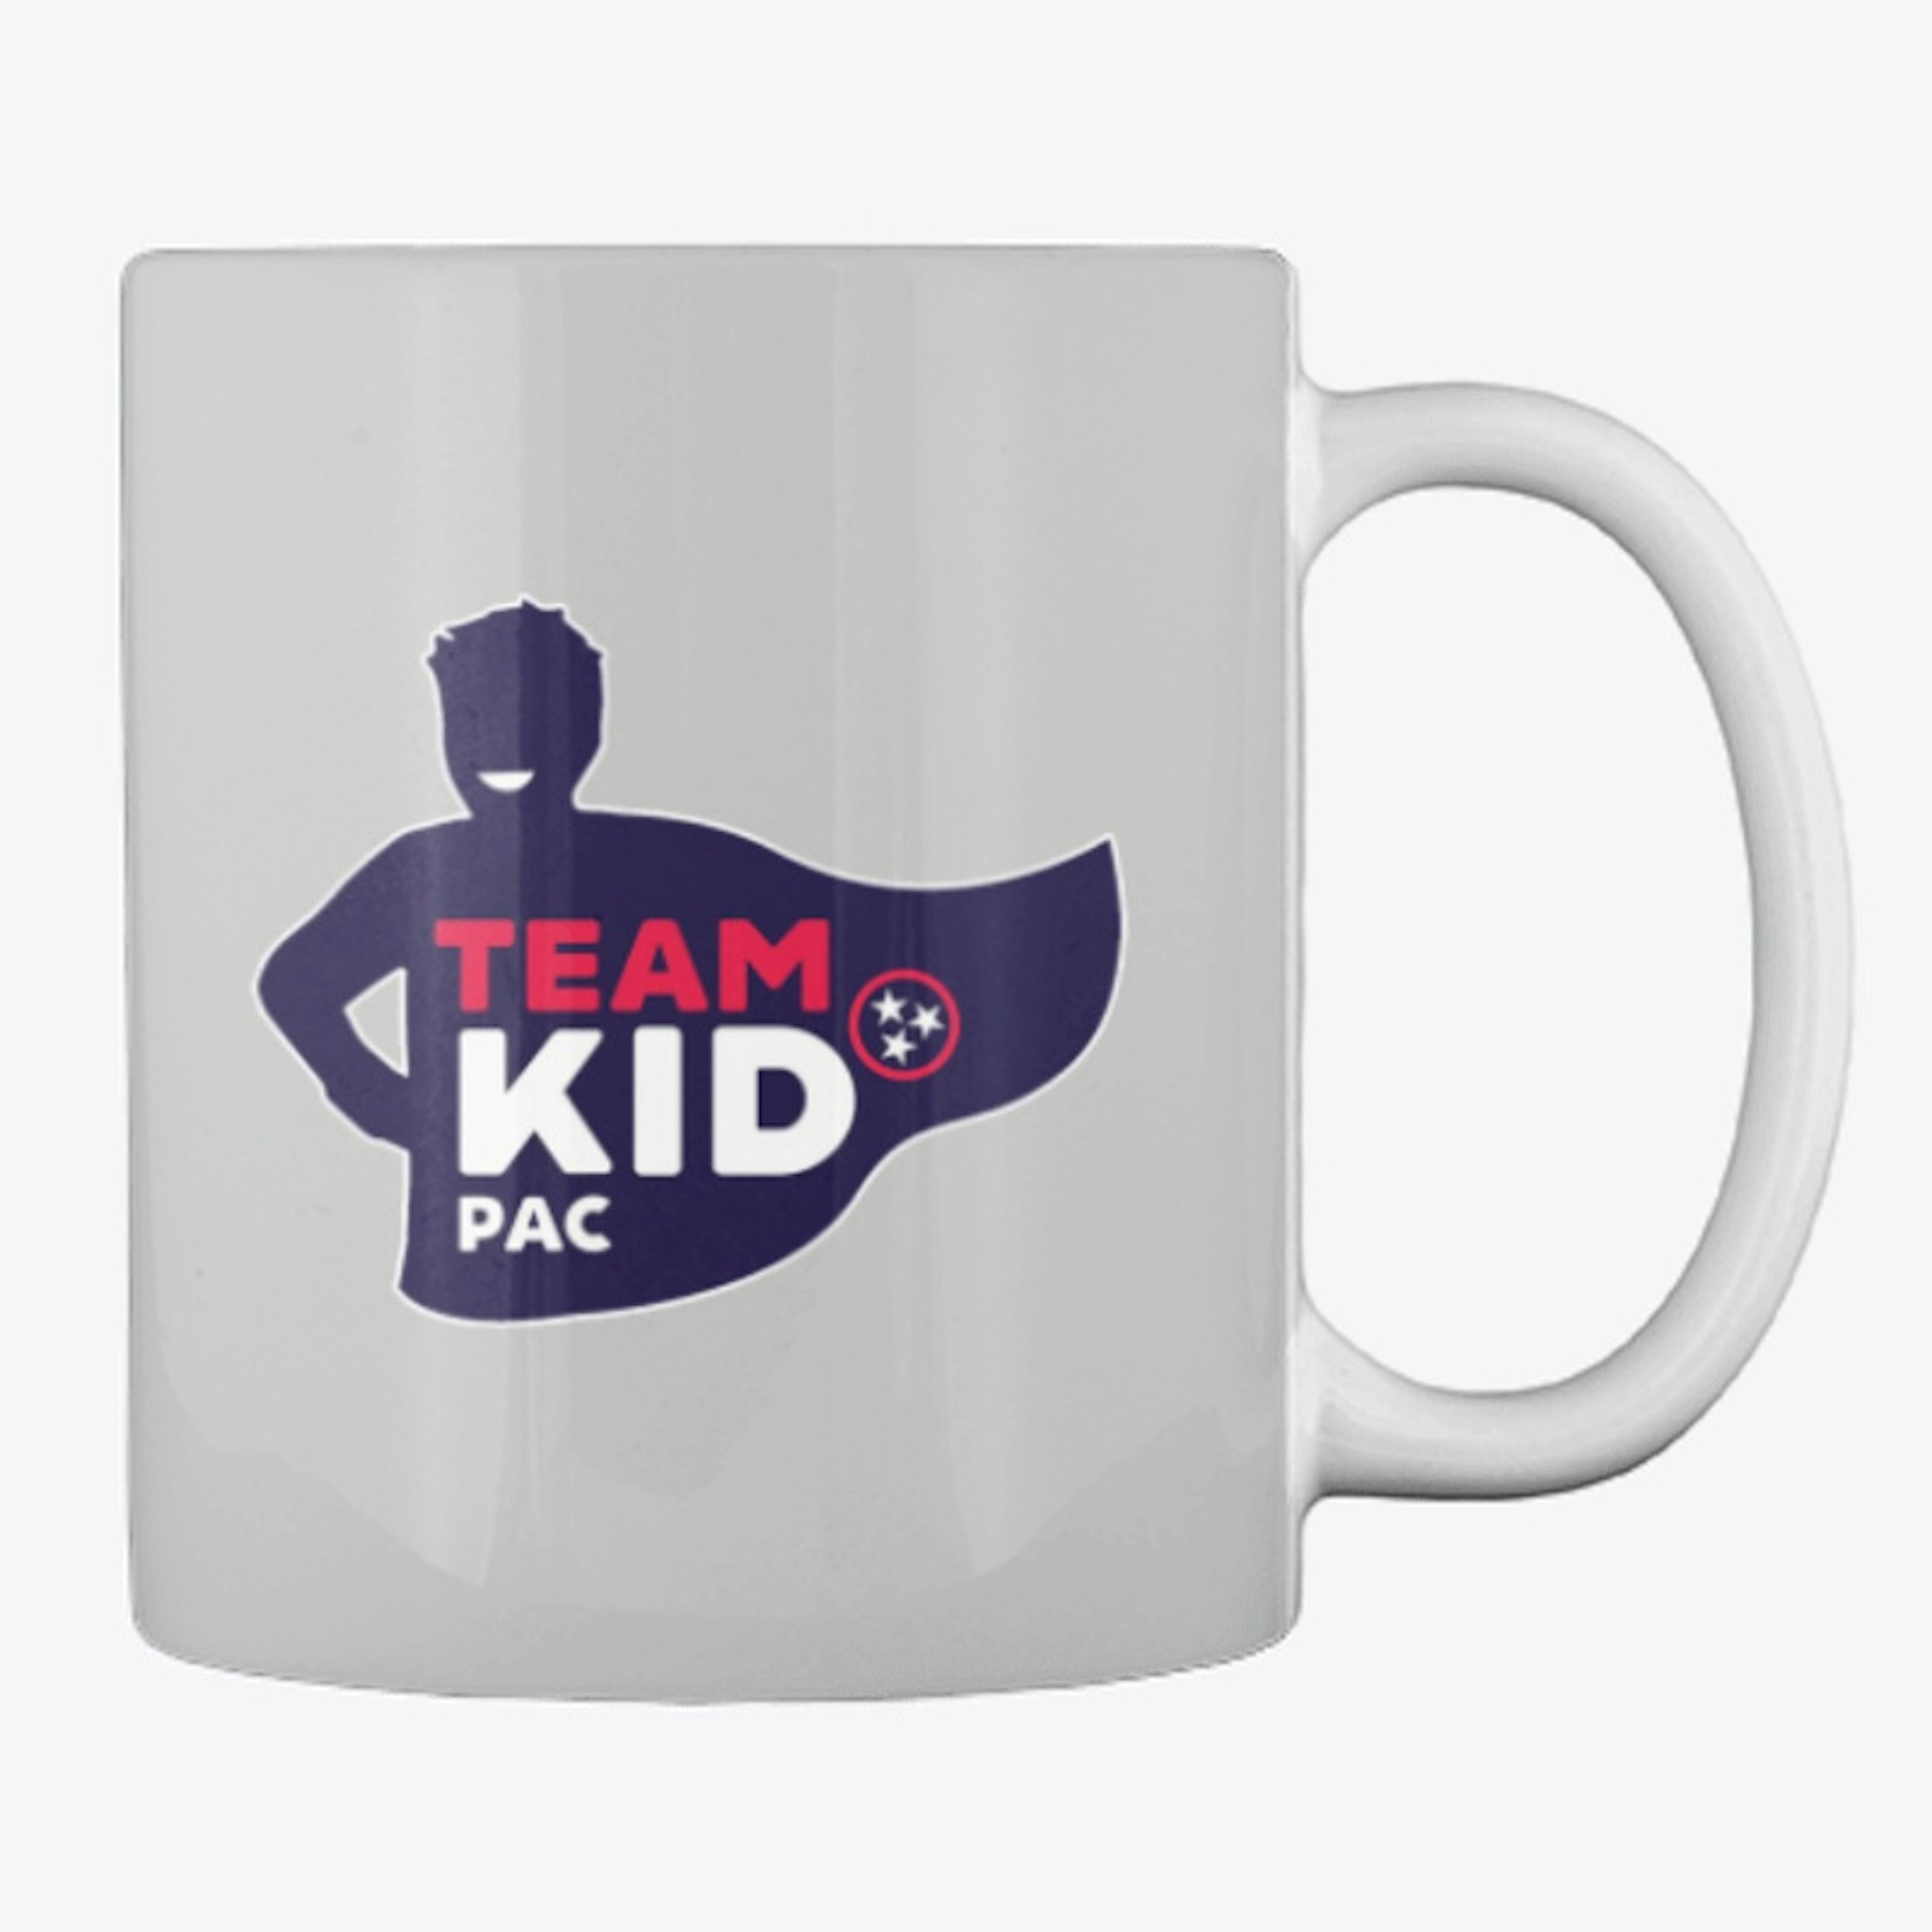 Team Kid PAC Coffee Mug